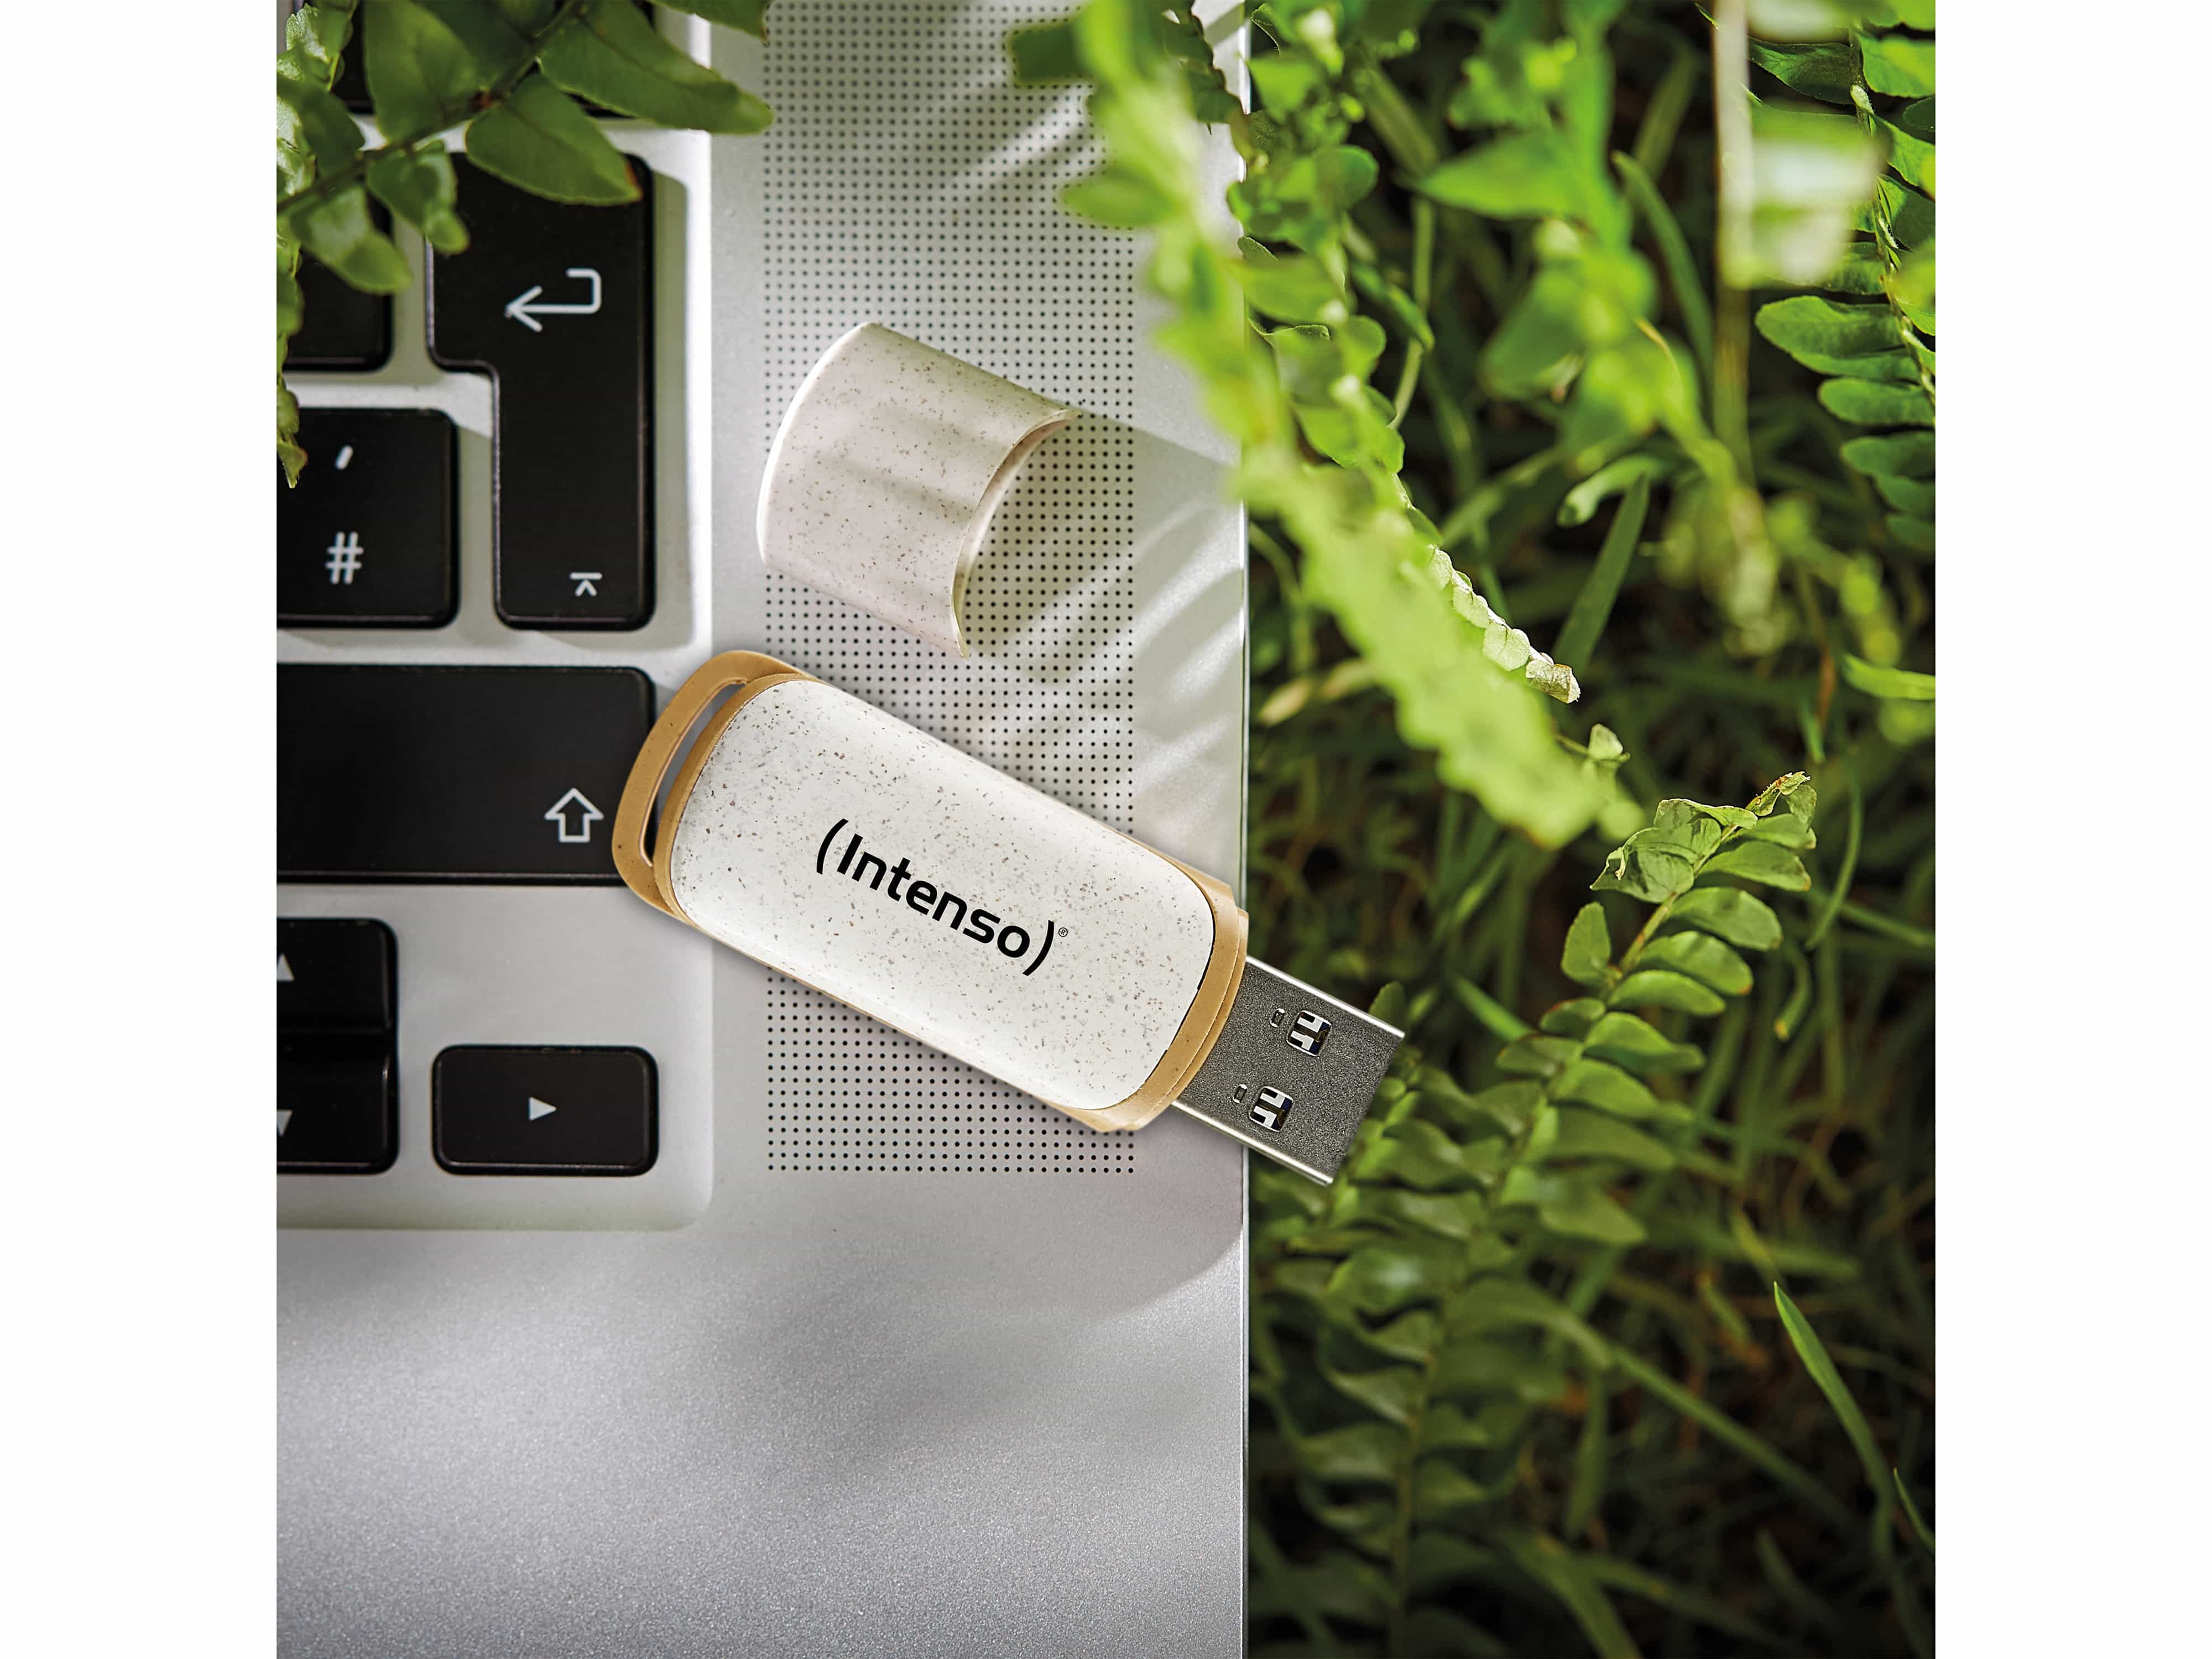 INTENSO USB 3.2-Stick INTENSO Green Line, 128 GB, beige/braun